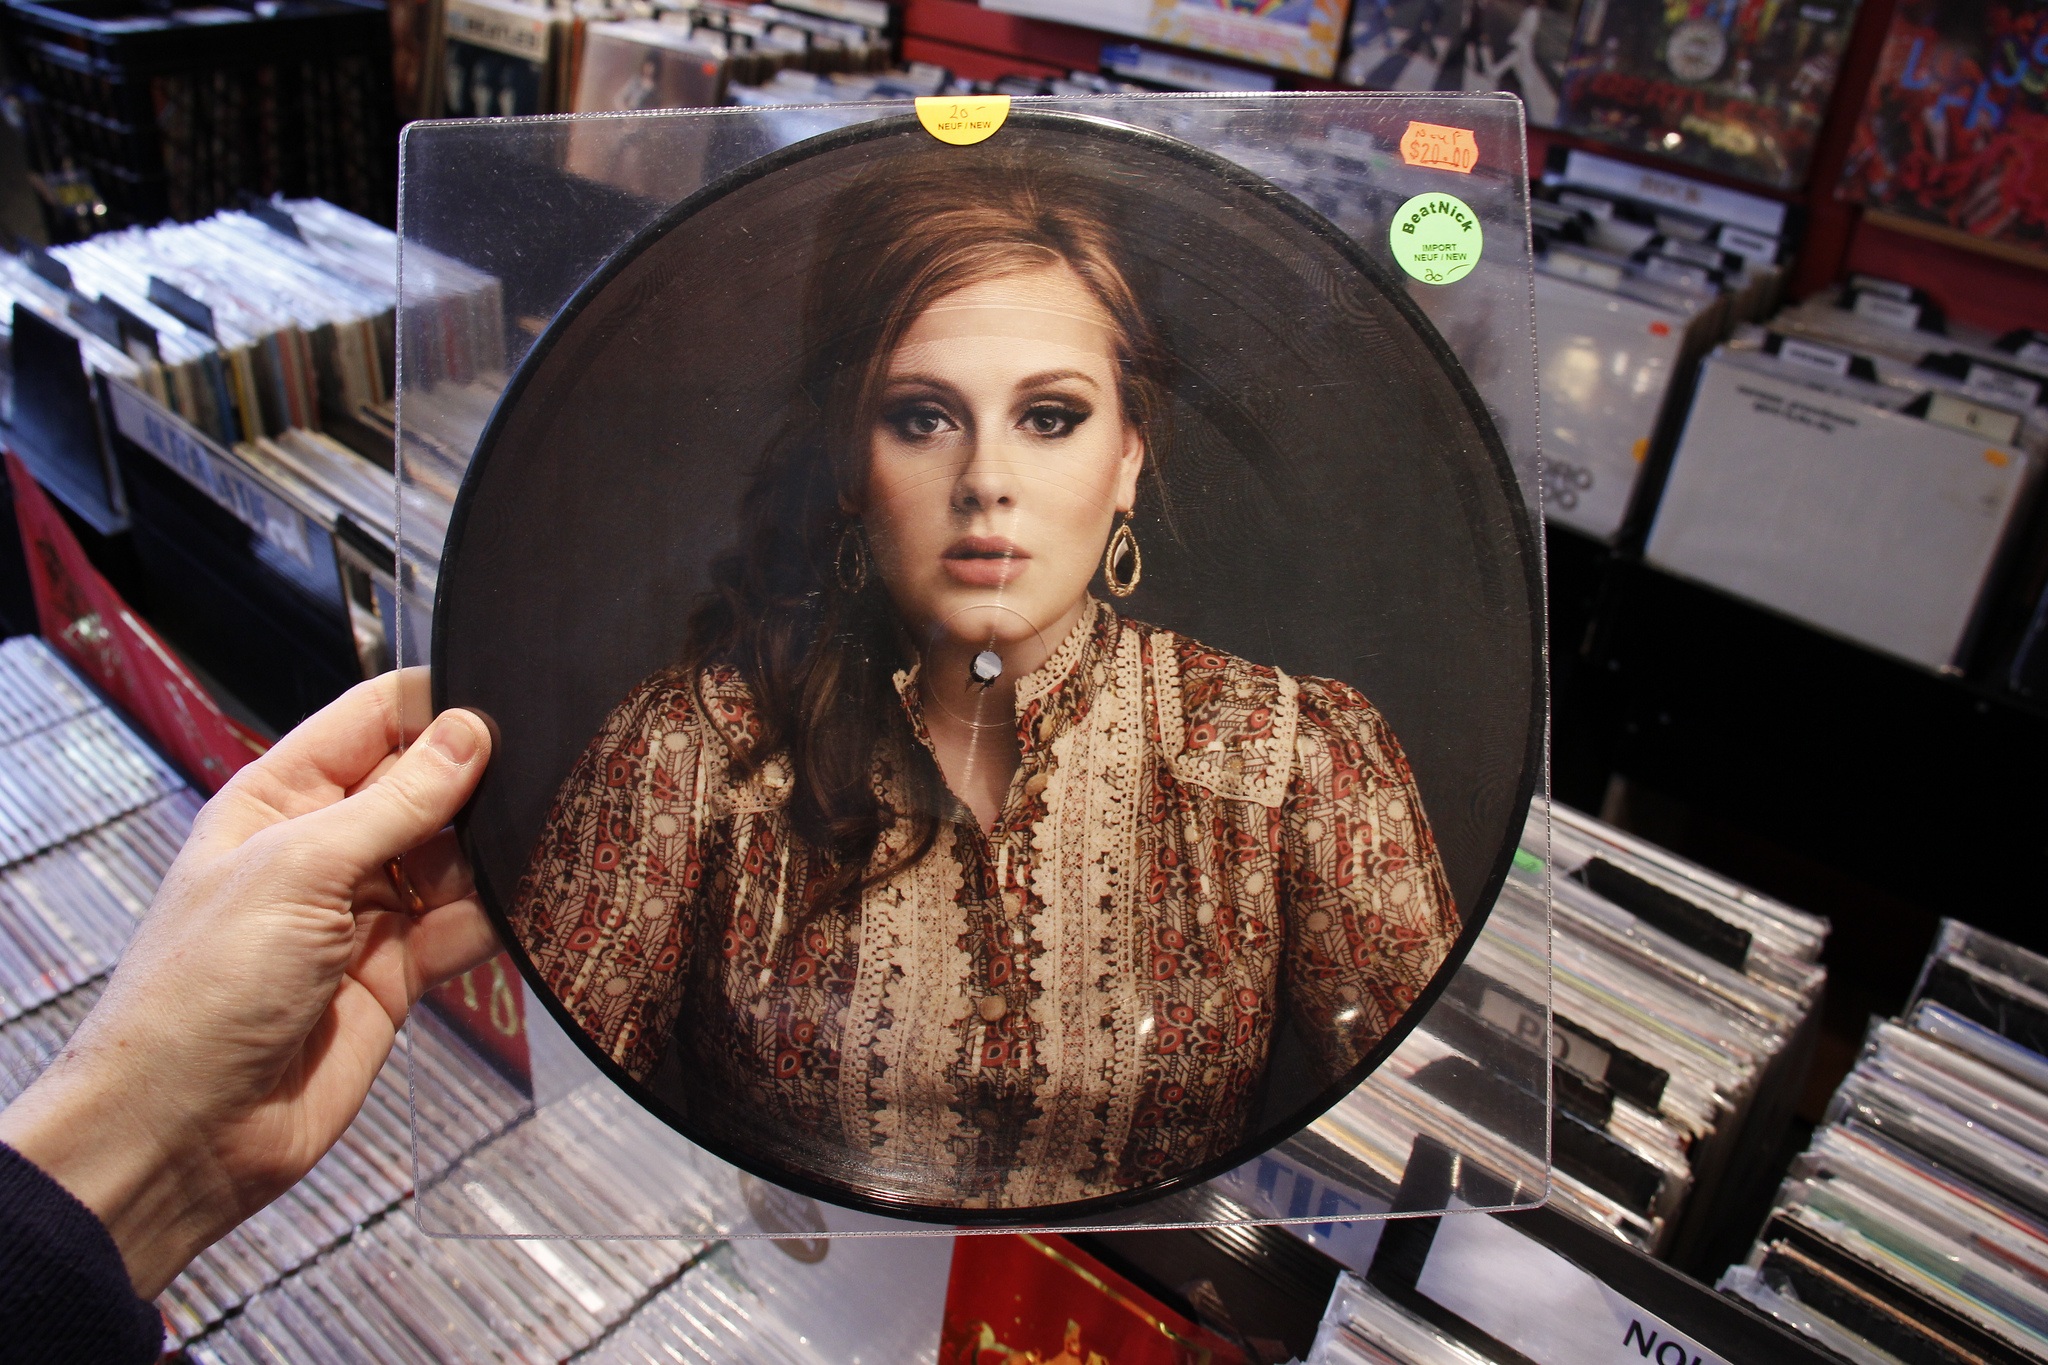 ¡Adele debería ser la mejor amiga y modelo a seguir de todos!